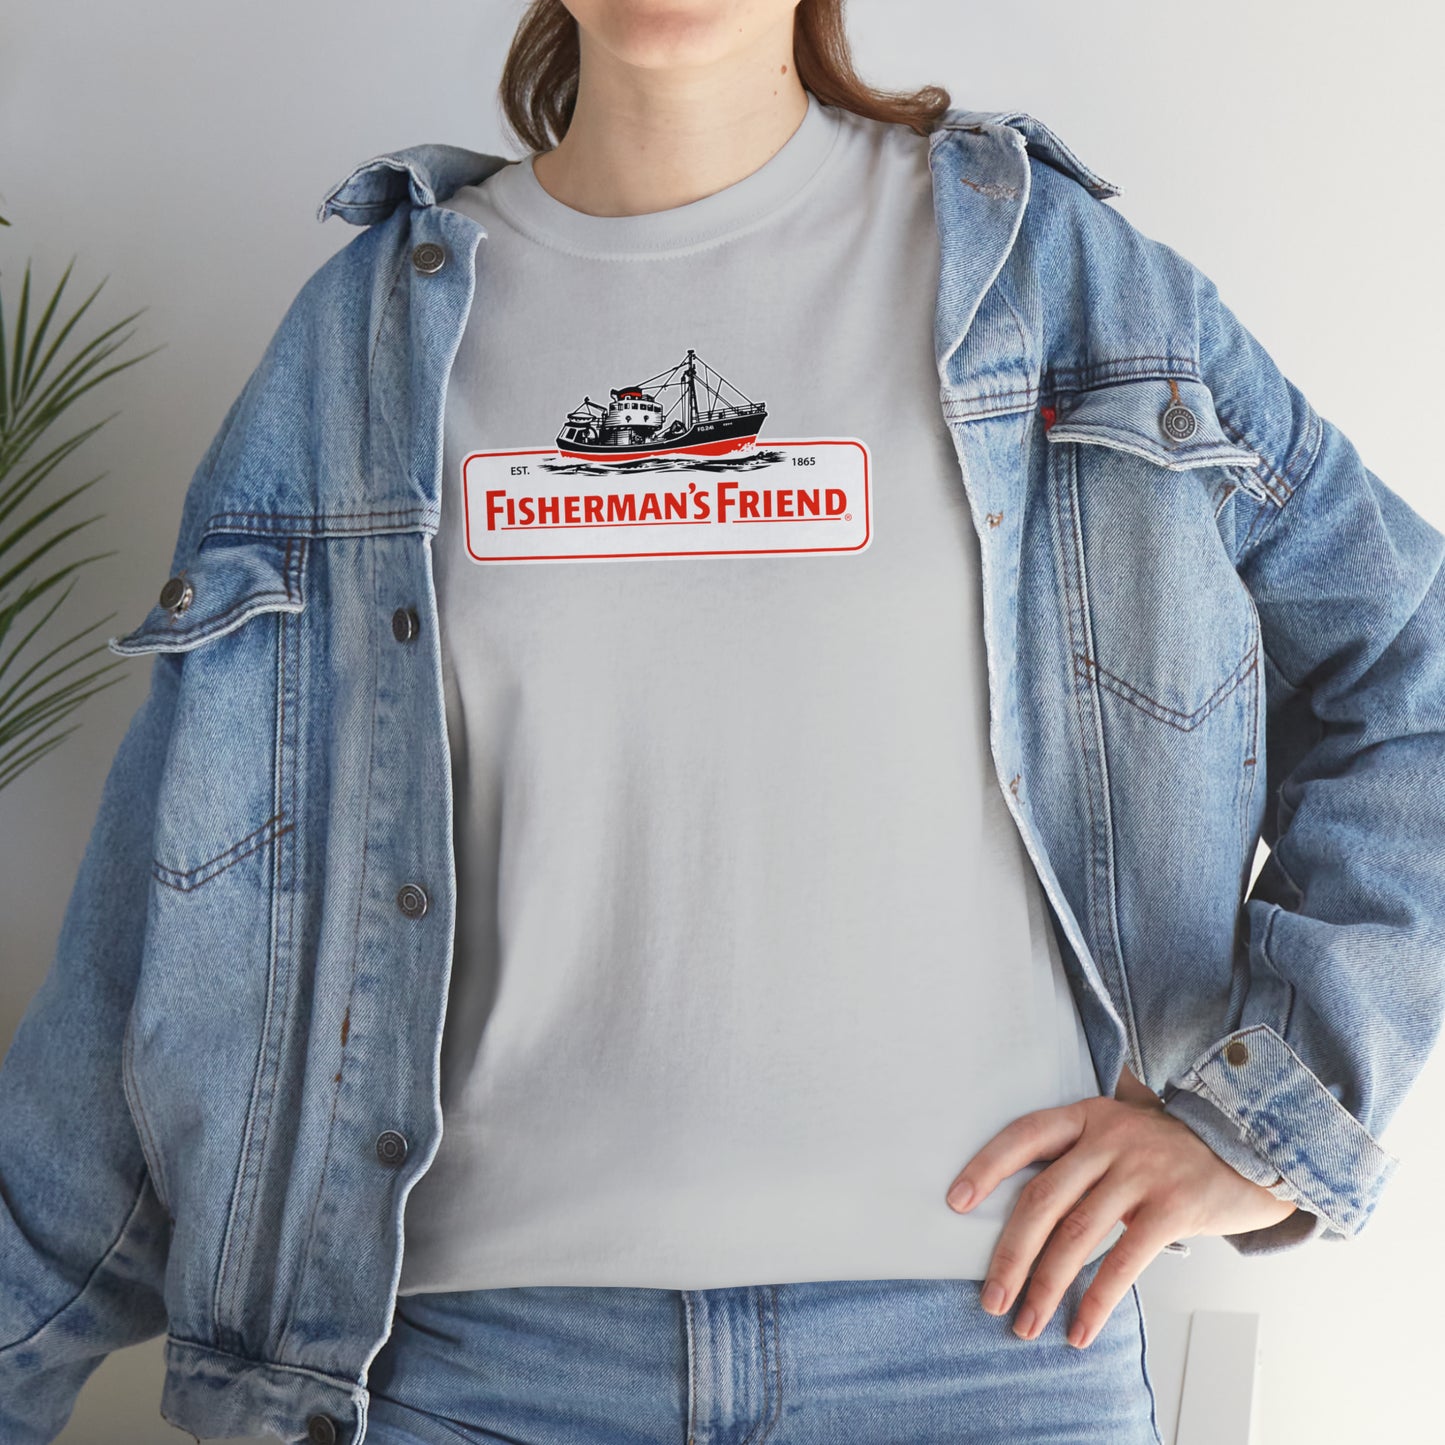 Fisherman's Friend T-Shirt